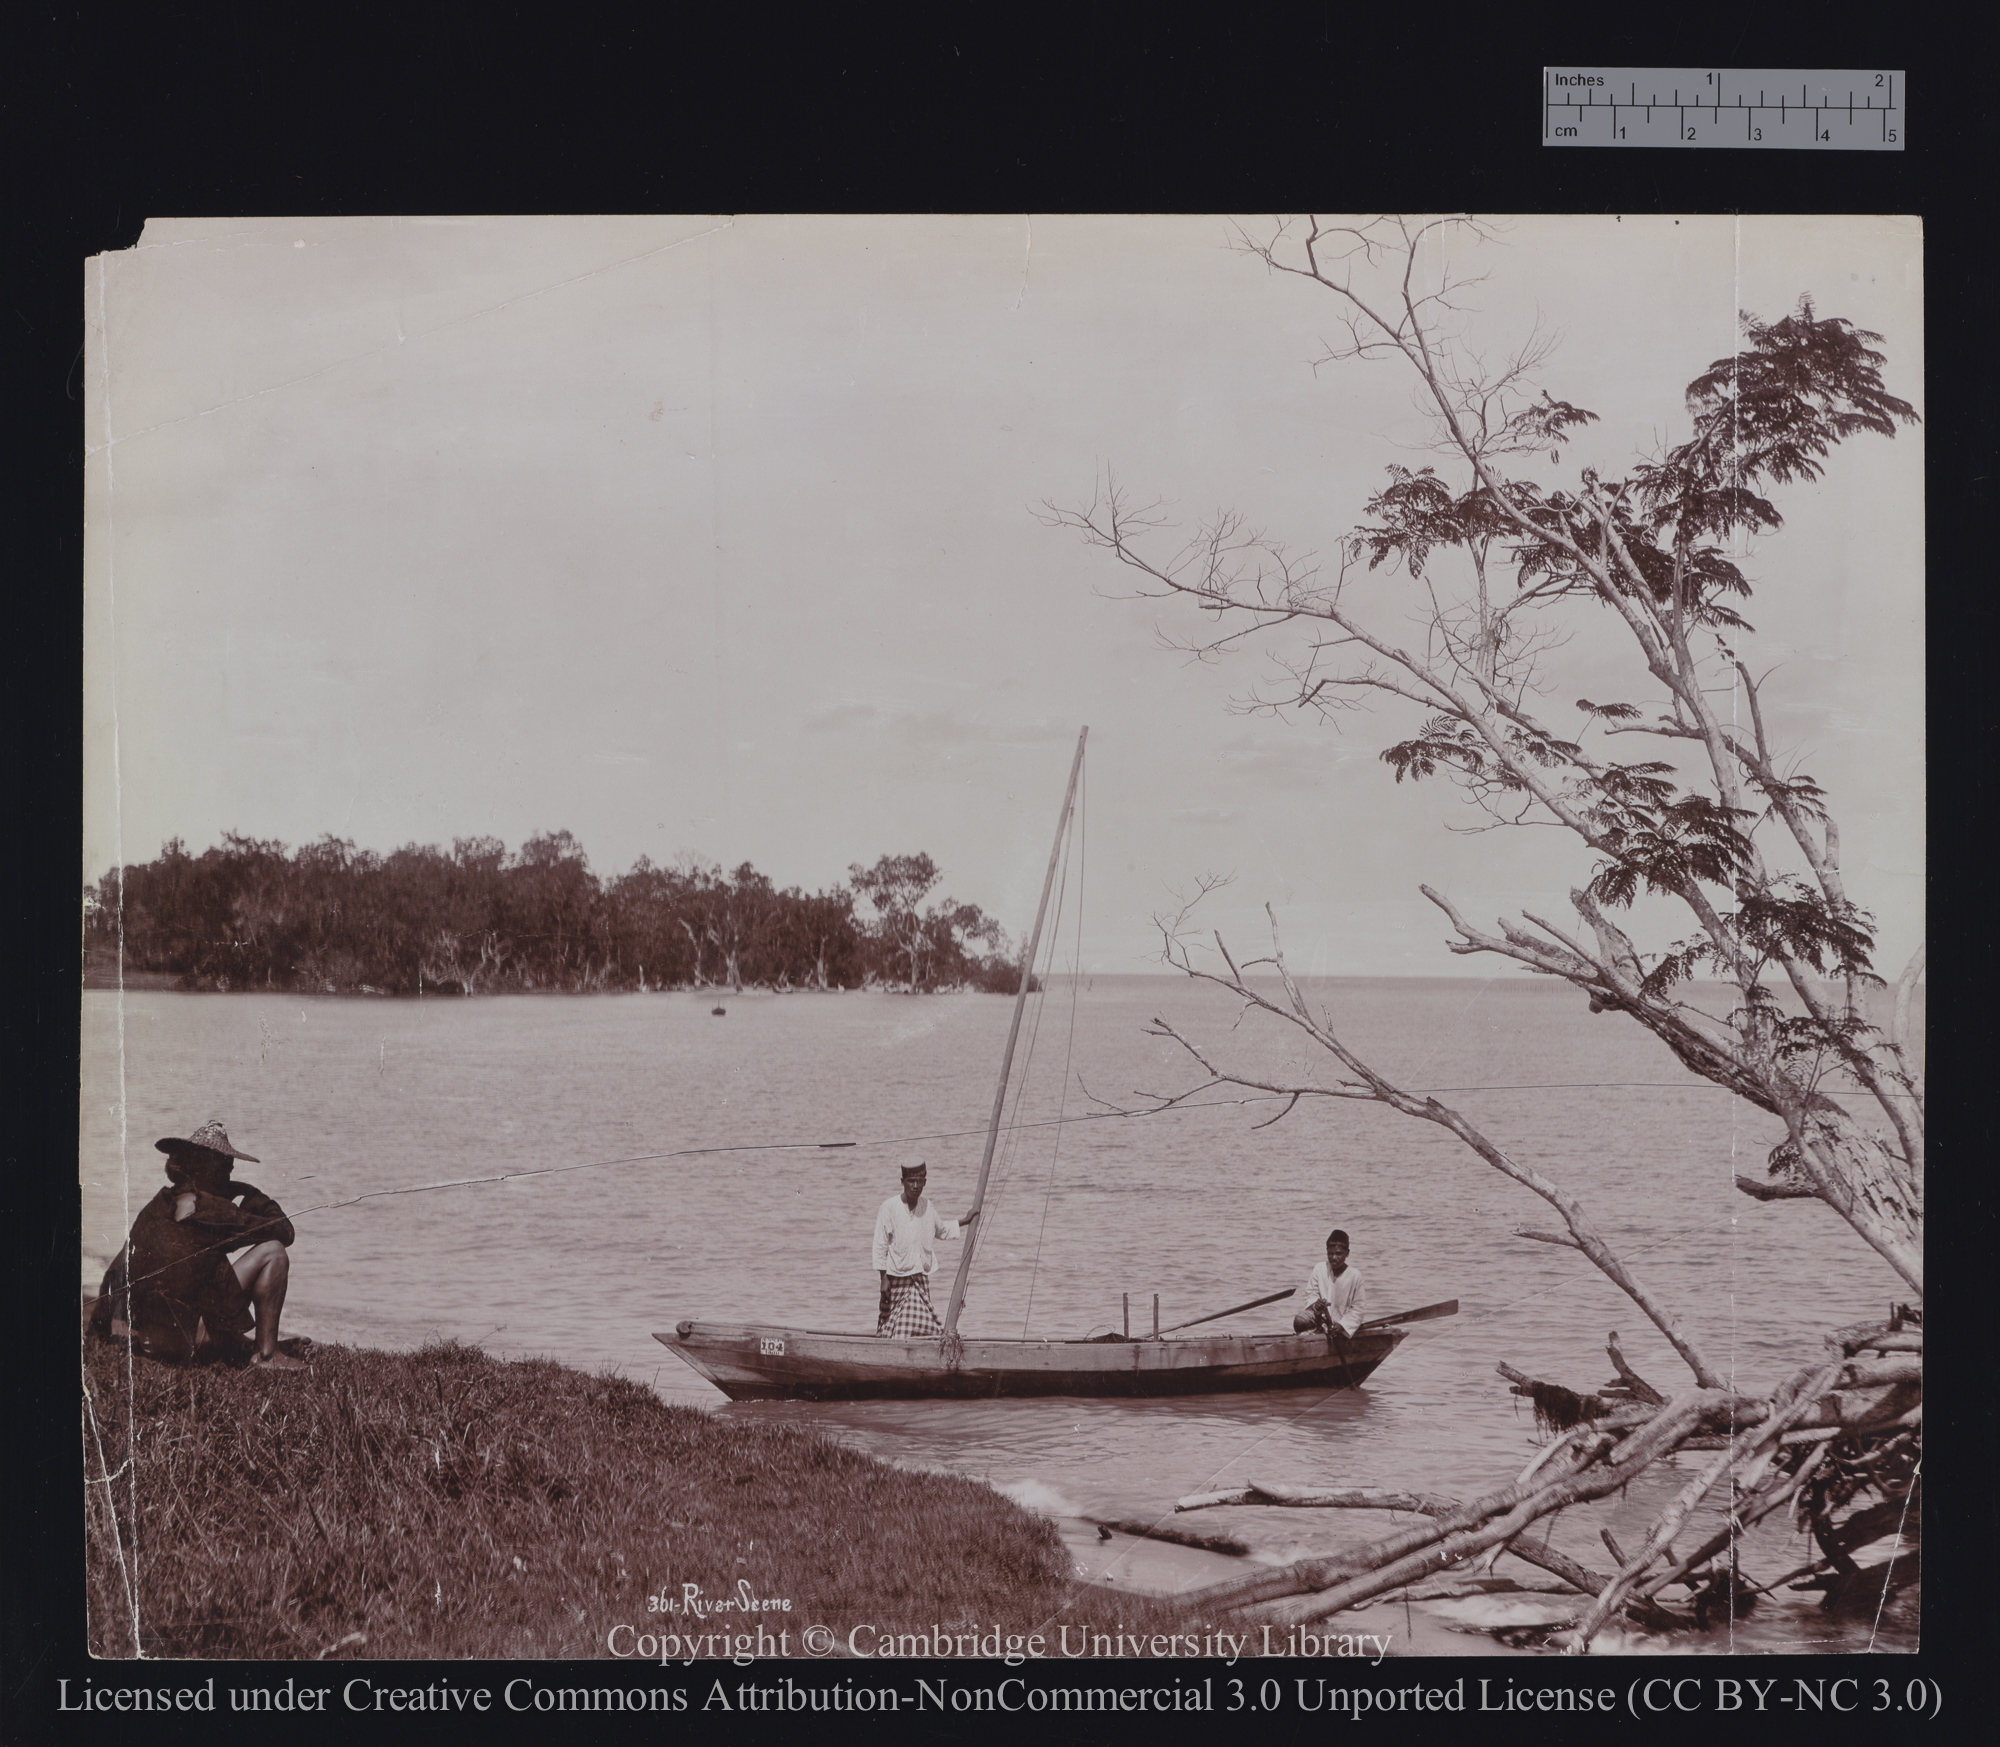 River scene [? Singapore], 1900